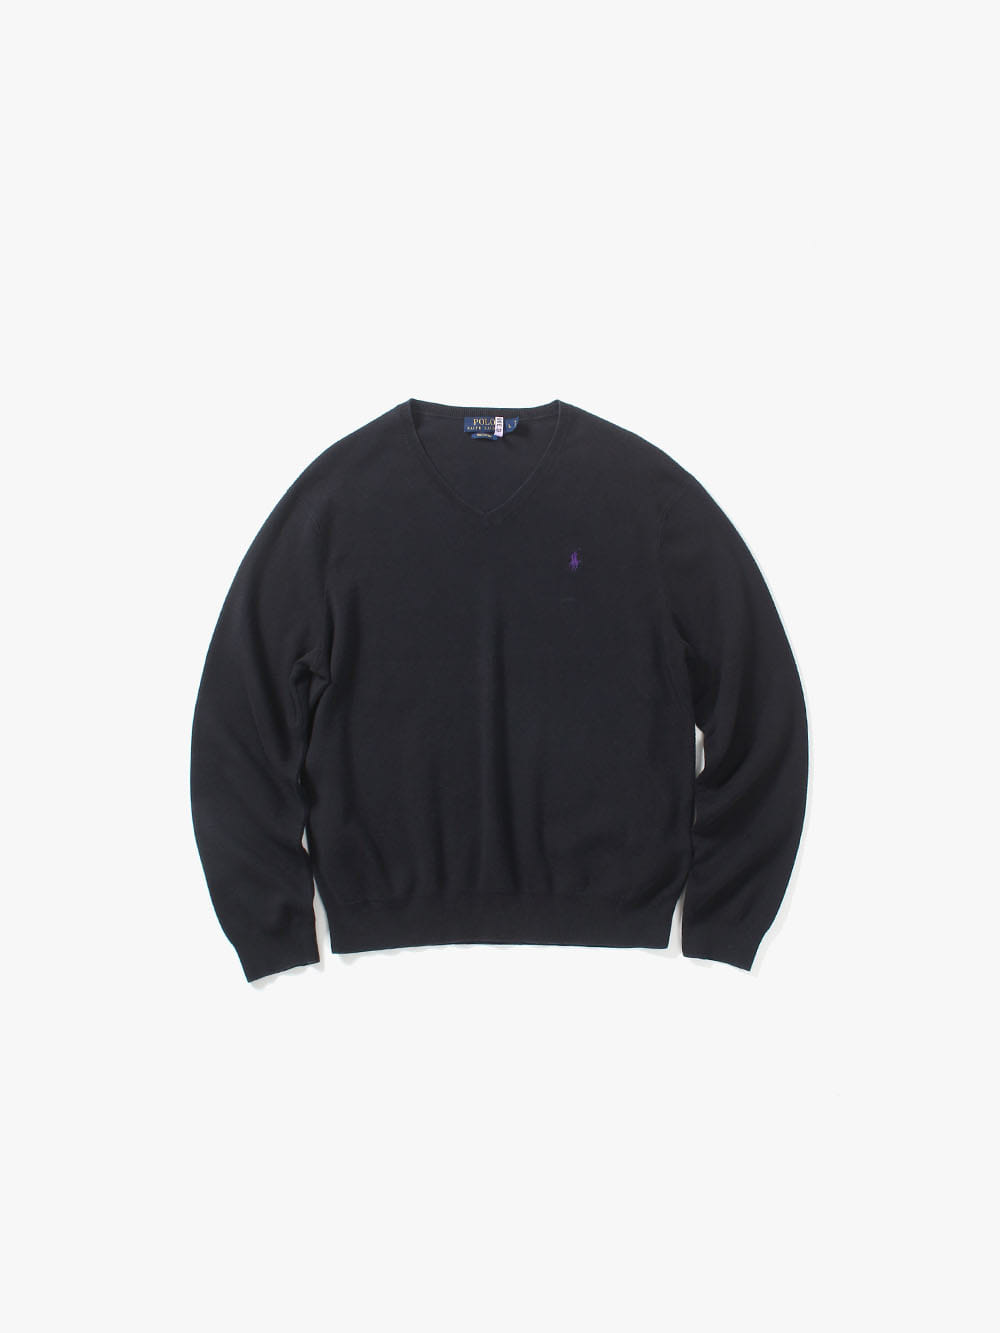 [ L ] Polo Ralph Lauren Sweater (6256)